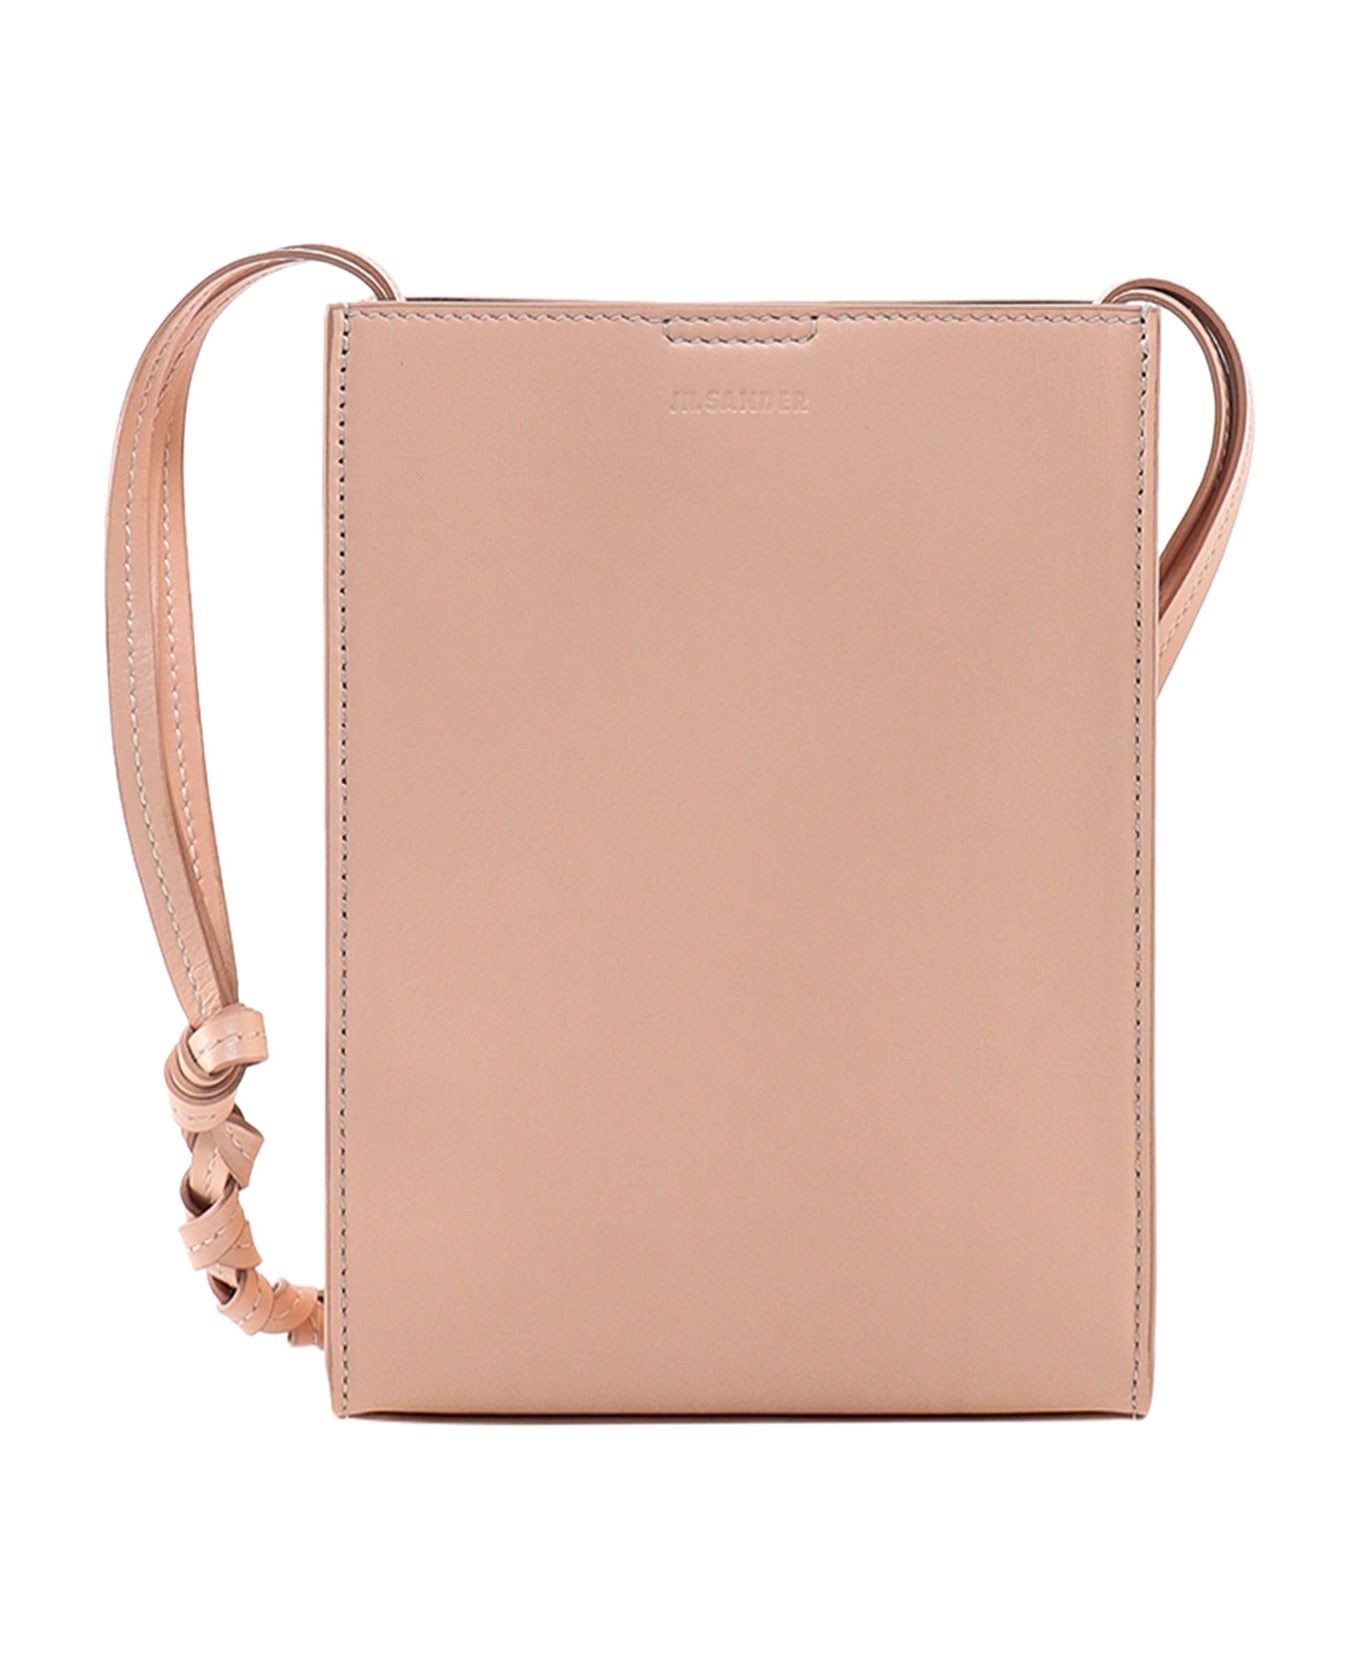 Jil Sander Skin Pink Leather Small Tangle Shoulder Bag - Pink